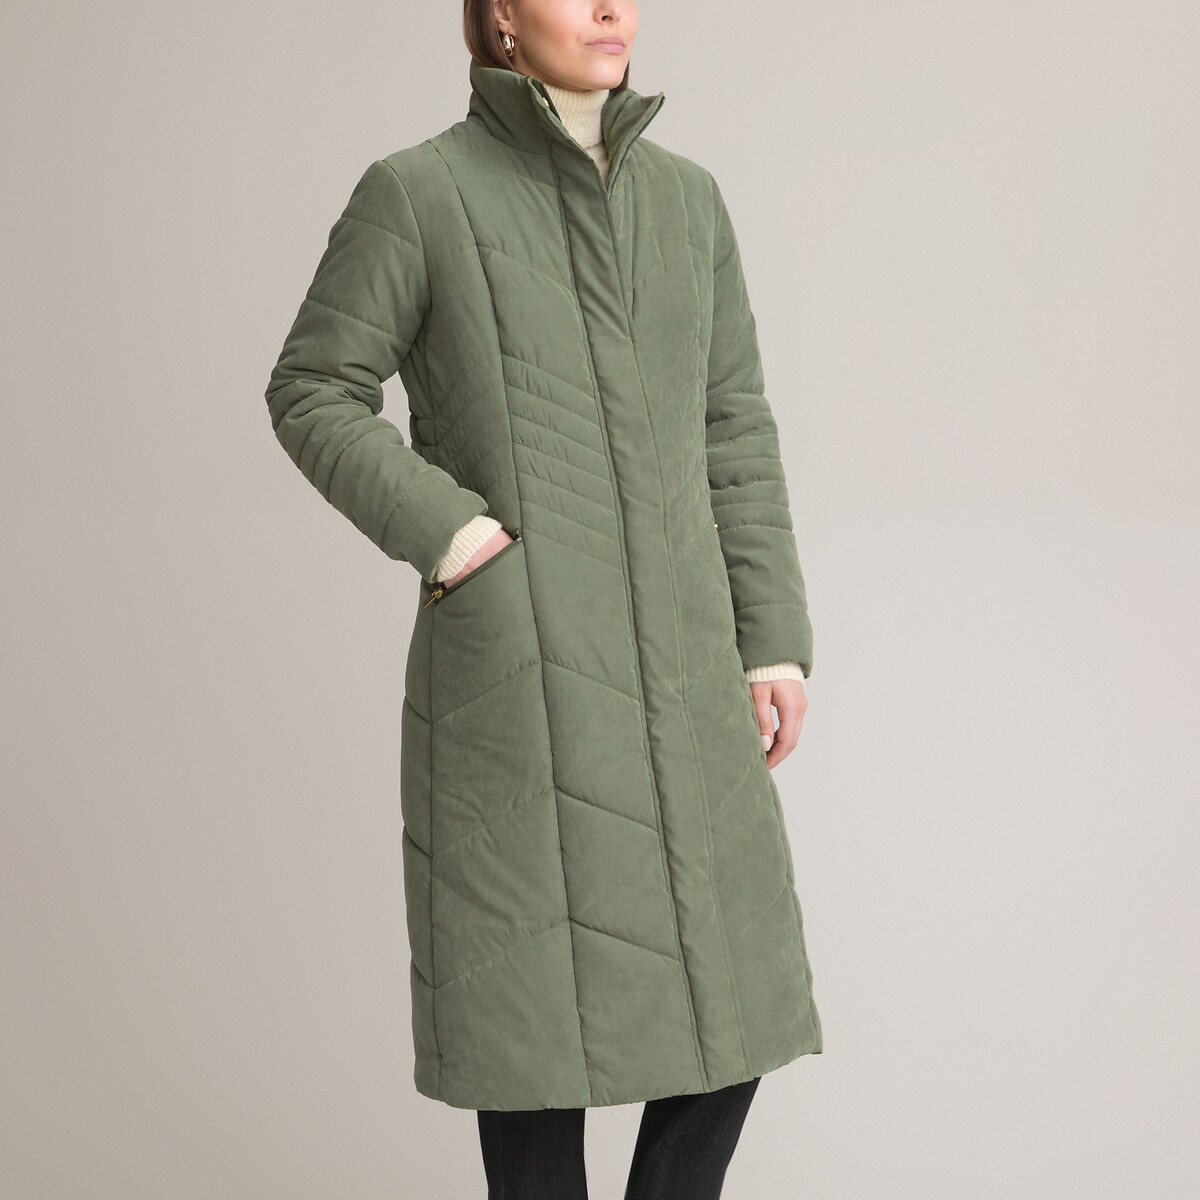 Куртка стеганая длинная застежка на молнию 54 (FR) - 60 (RUS) зеленый джинсы узкие 78 застежка на молнию на щиколотке 38 fr 44 rus розовый